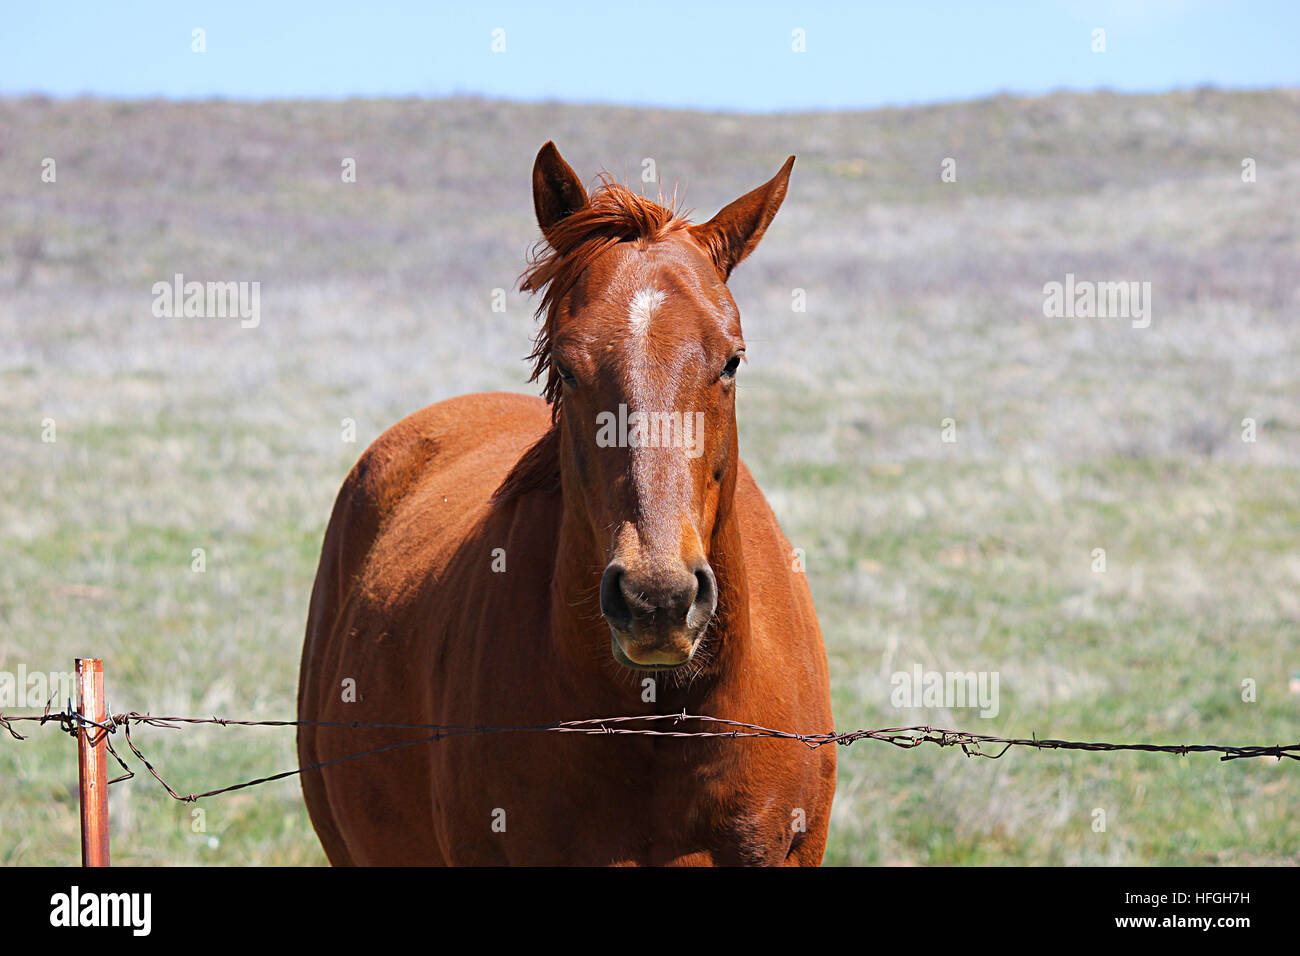 Près du cheval face à l'appareil photo derrière une barrière de barbelé. Banque D'Images